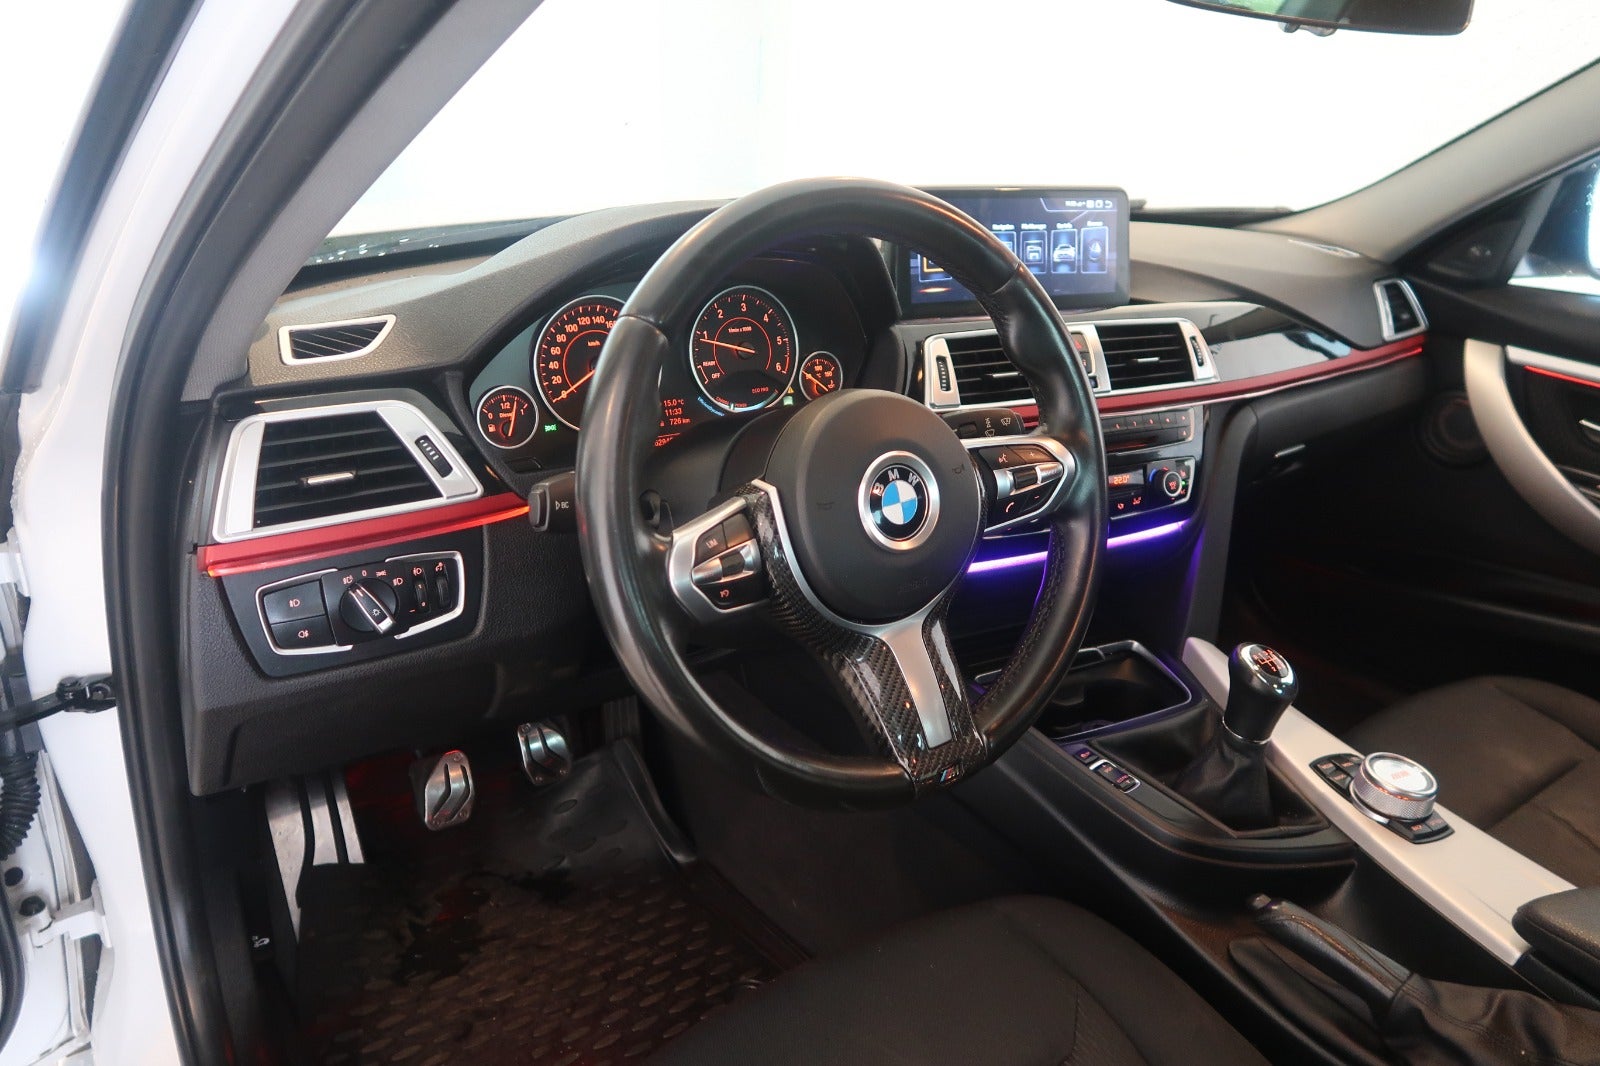 BMW 320d 2016